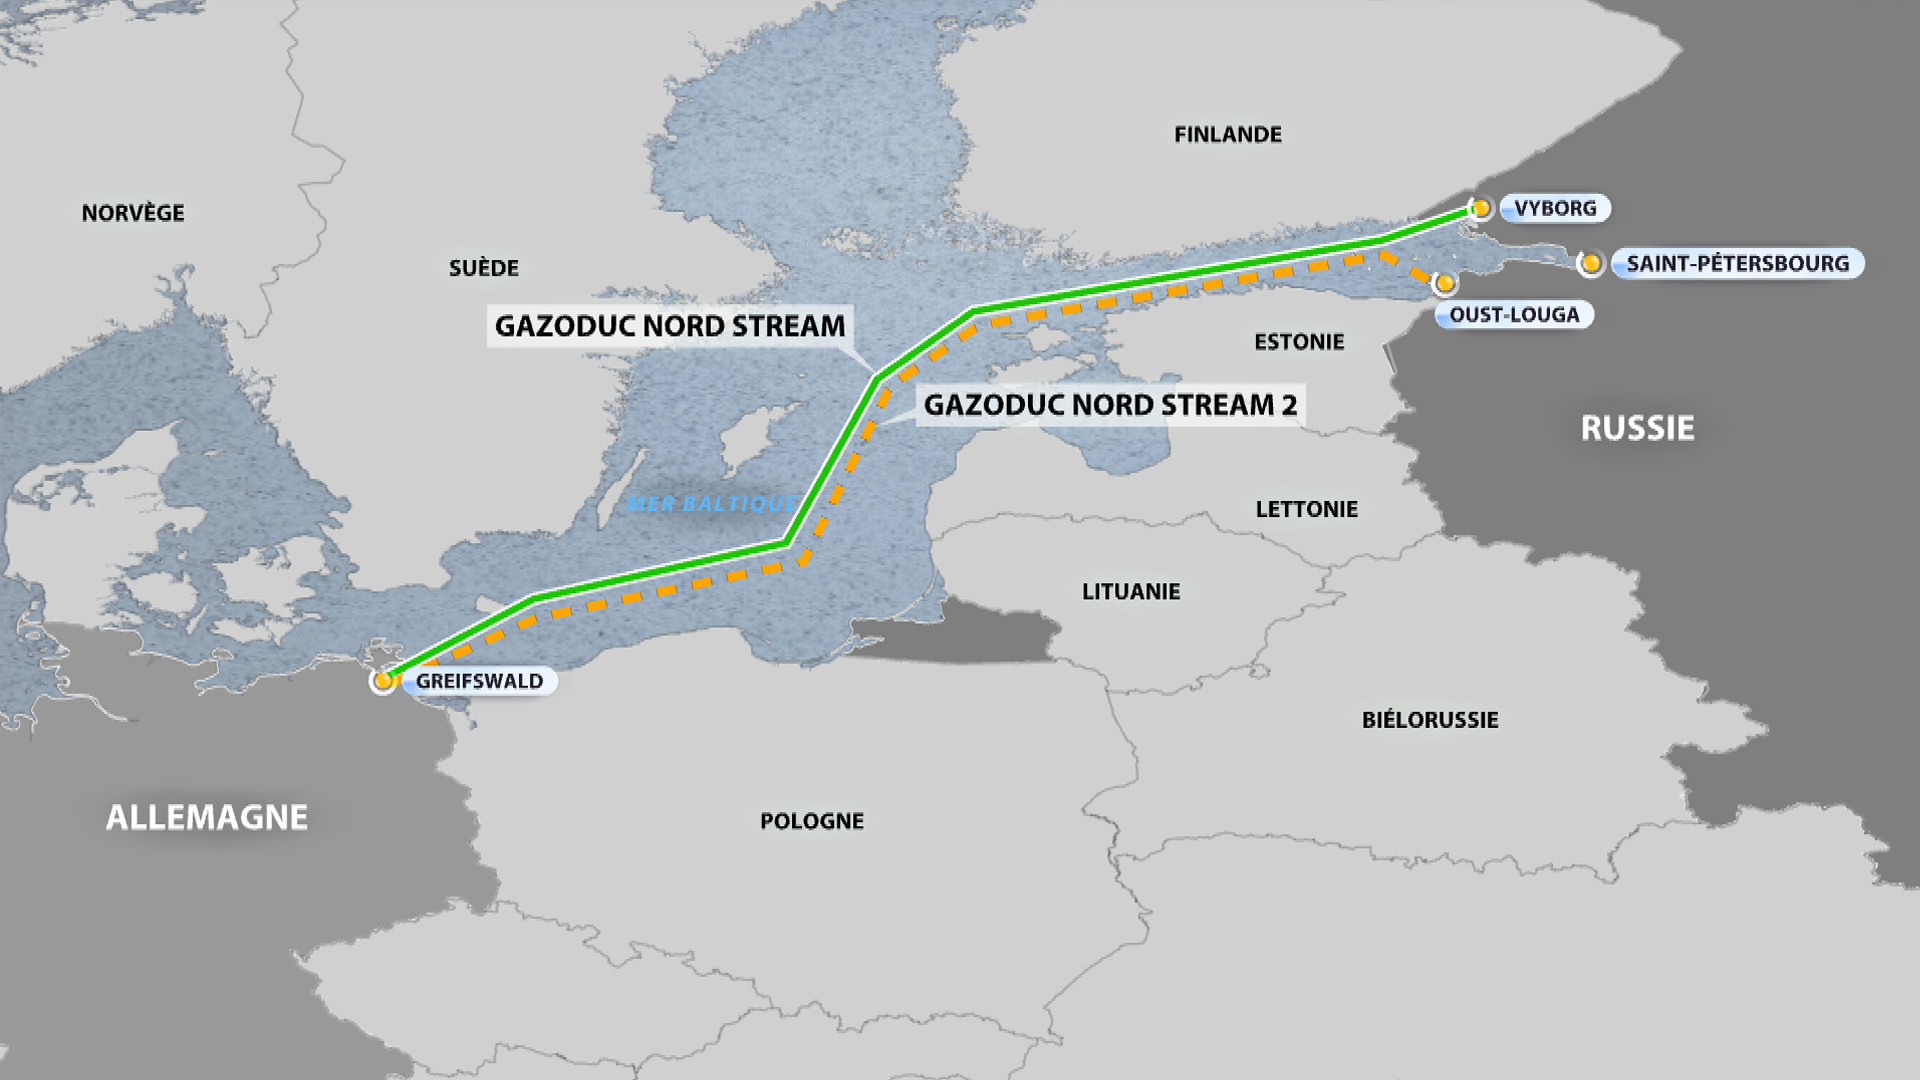 Italie contre Allemagne : un débat sur Nord Stream 2 divise l’UE